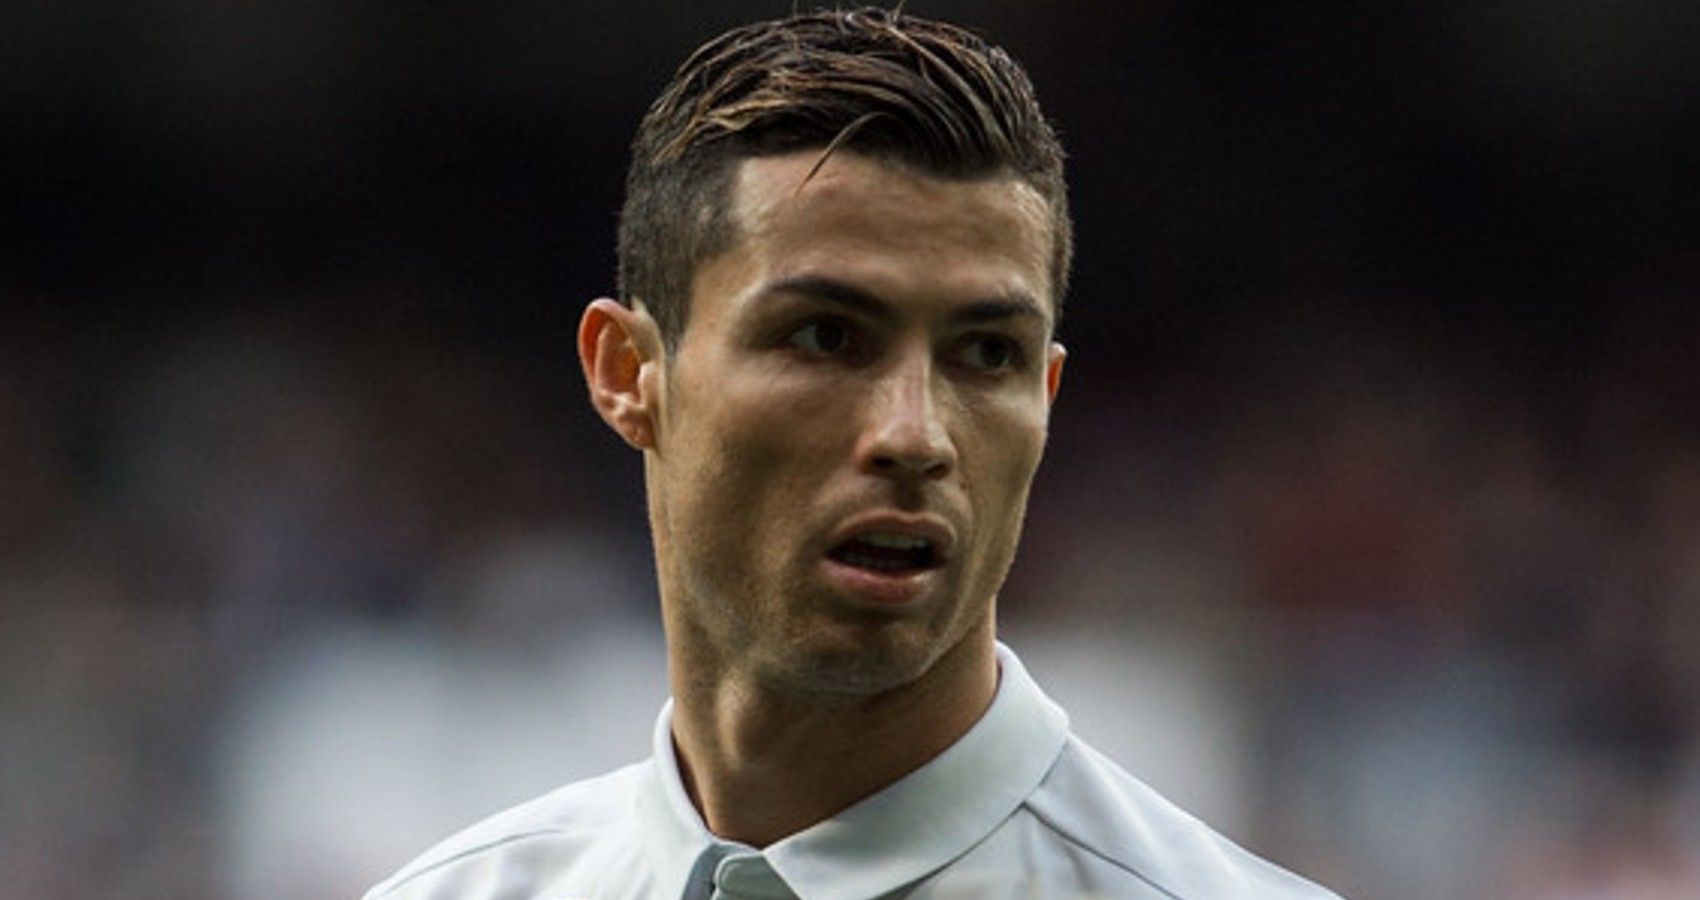 Cristiano Ronaldo Announces The Tragic Loss Of His Newborn Baby